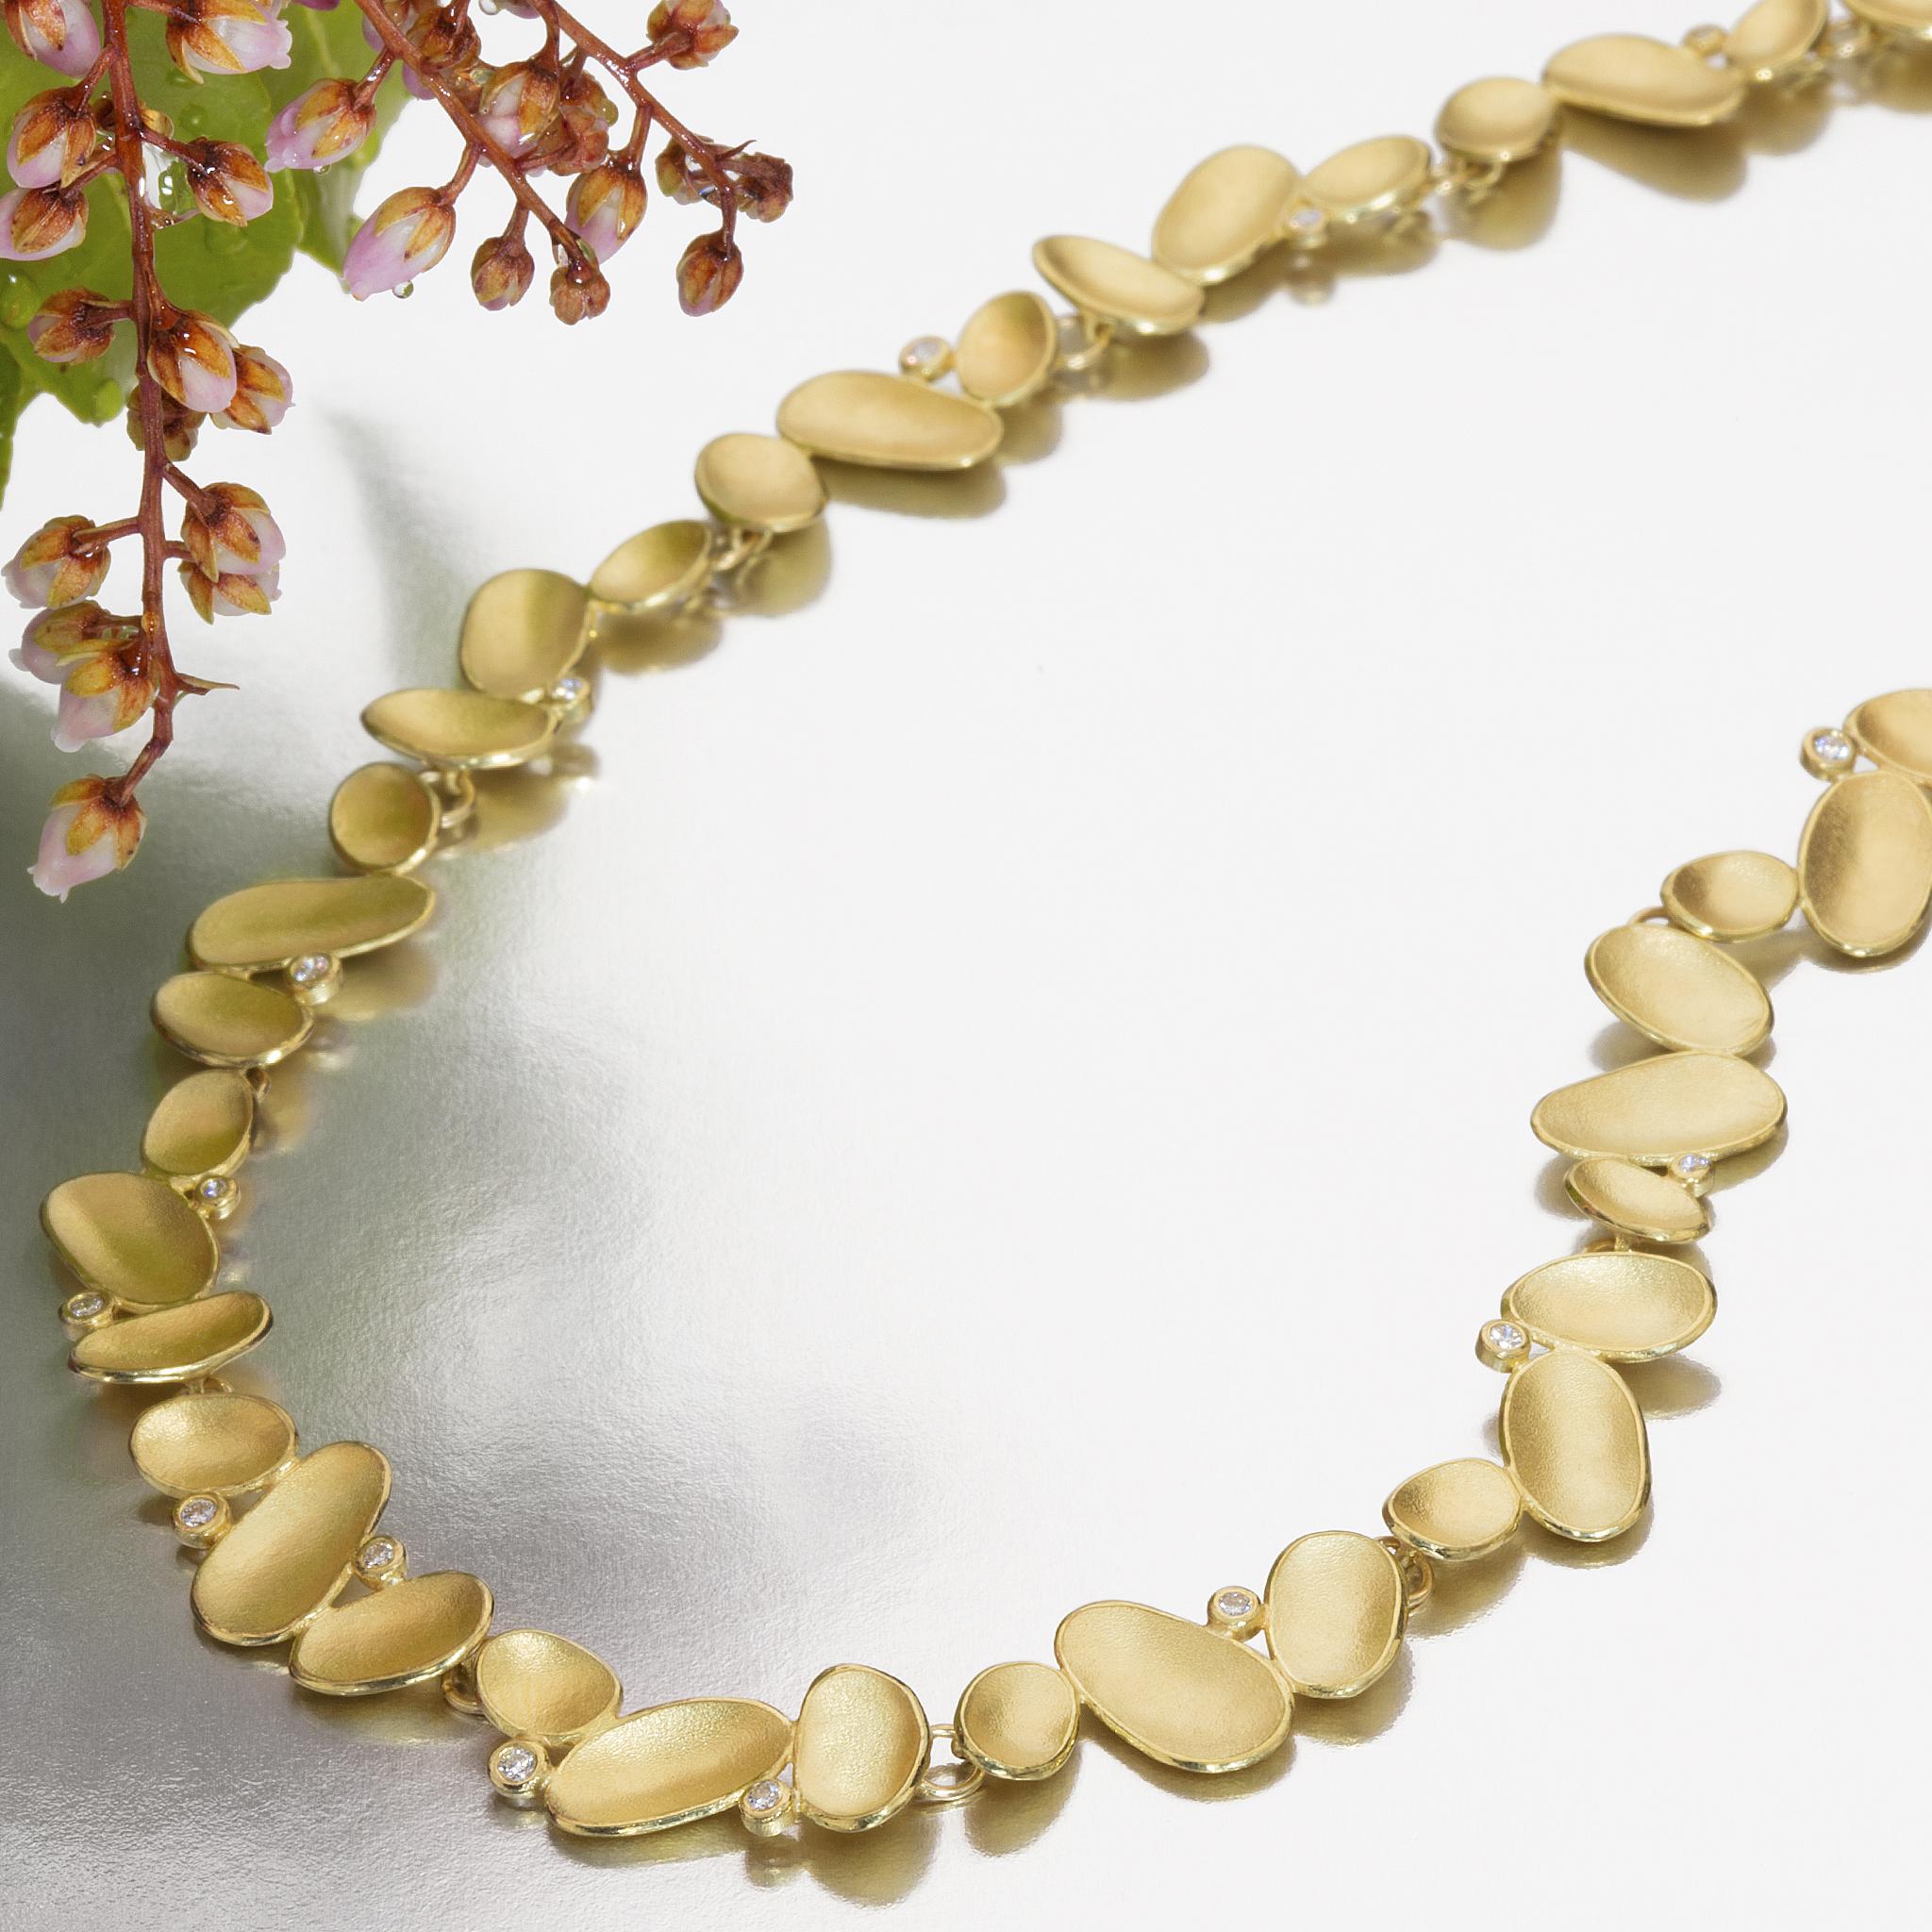 Goldene Muschel-Halskette, die von der renommierten Schmuckherstellerin Barbara Heinrich in aufwändiger Handarbeit aus massivem 18-karätigem Gelbgold gefertigt wurde. Sie besteht aus 17,75 cm langen, einzeln geformten goldenen Muschelelementen, die